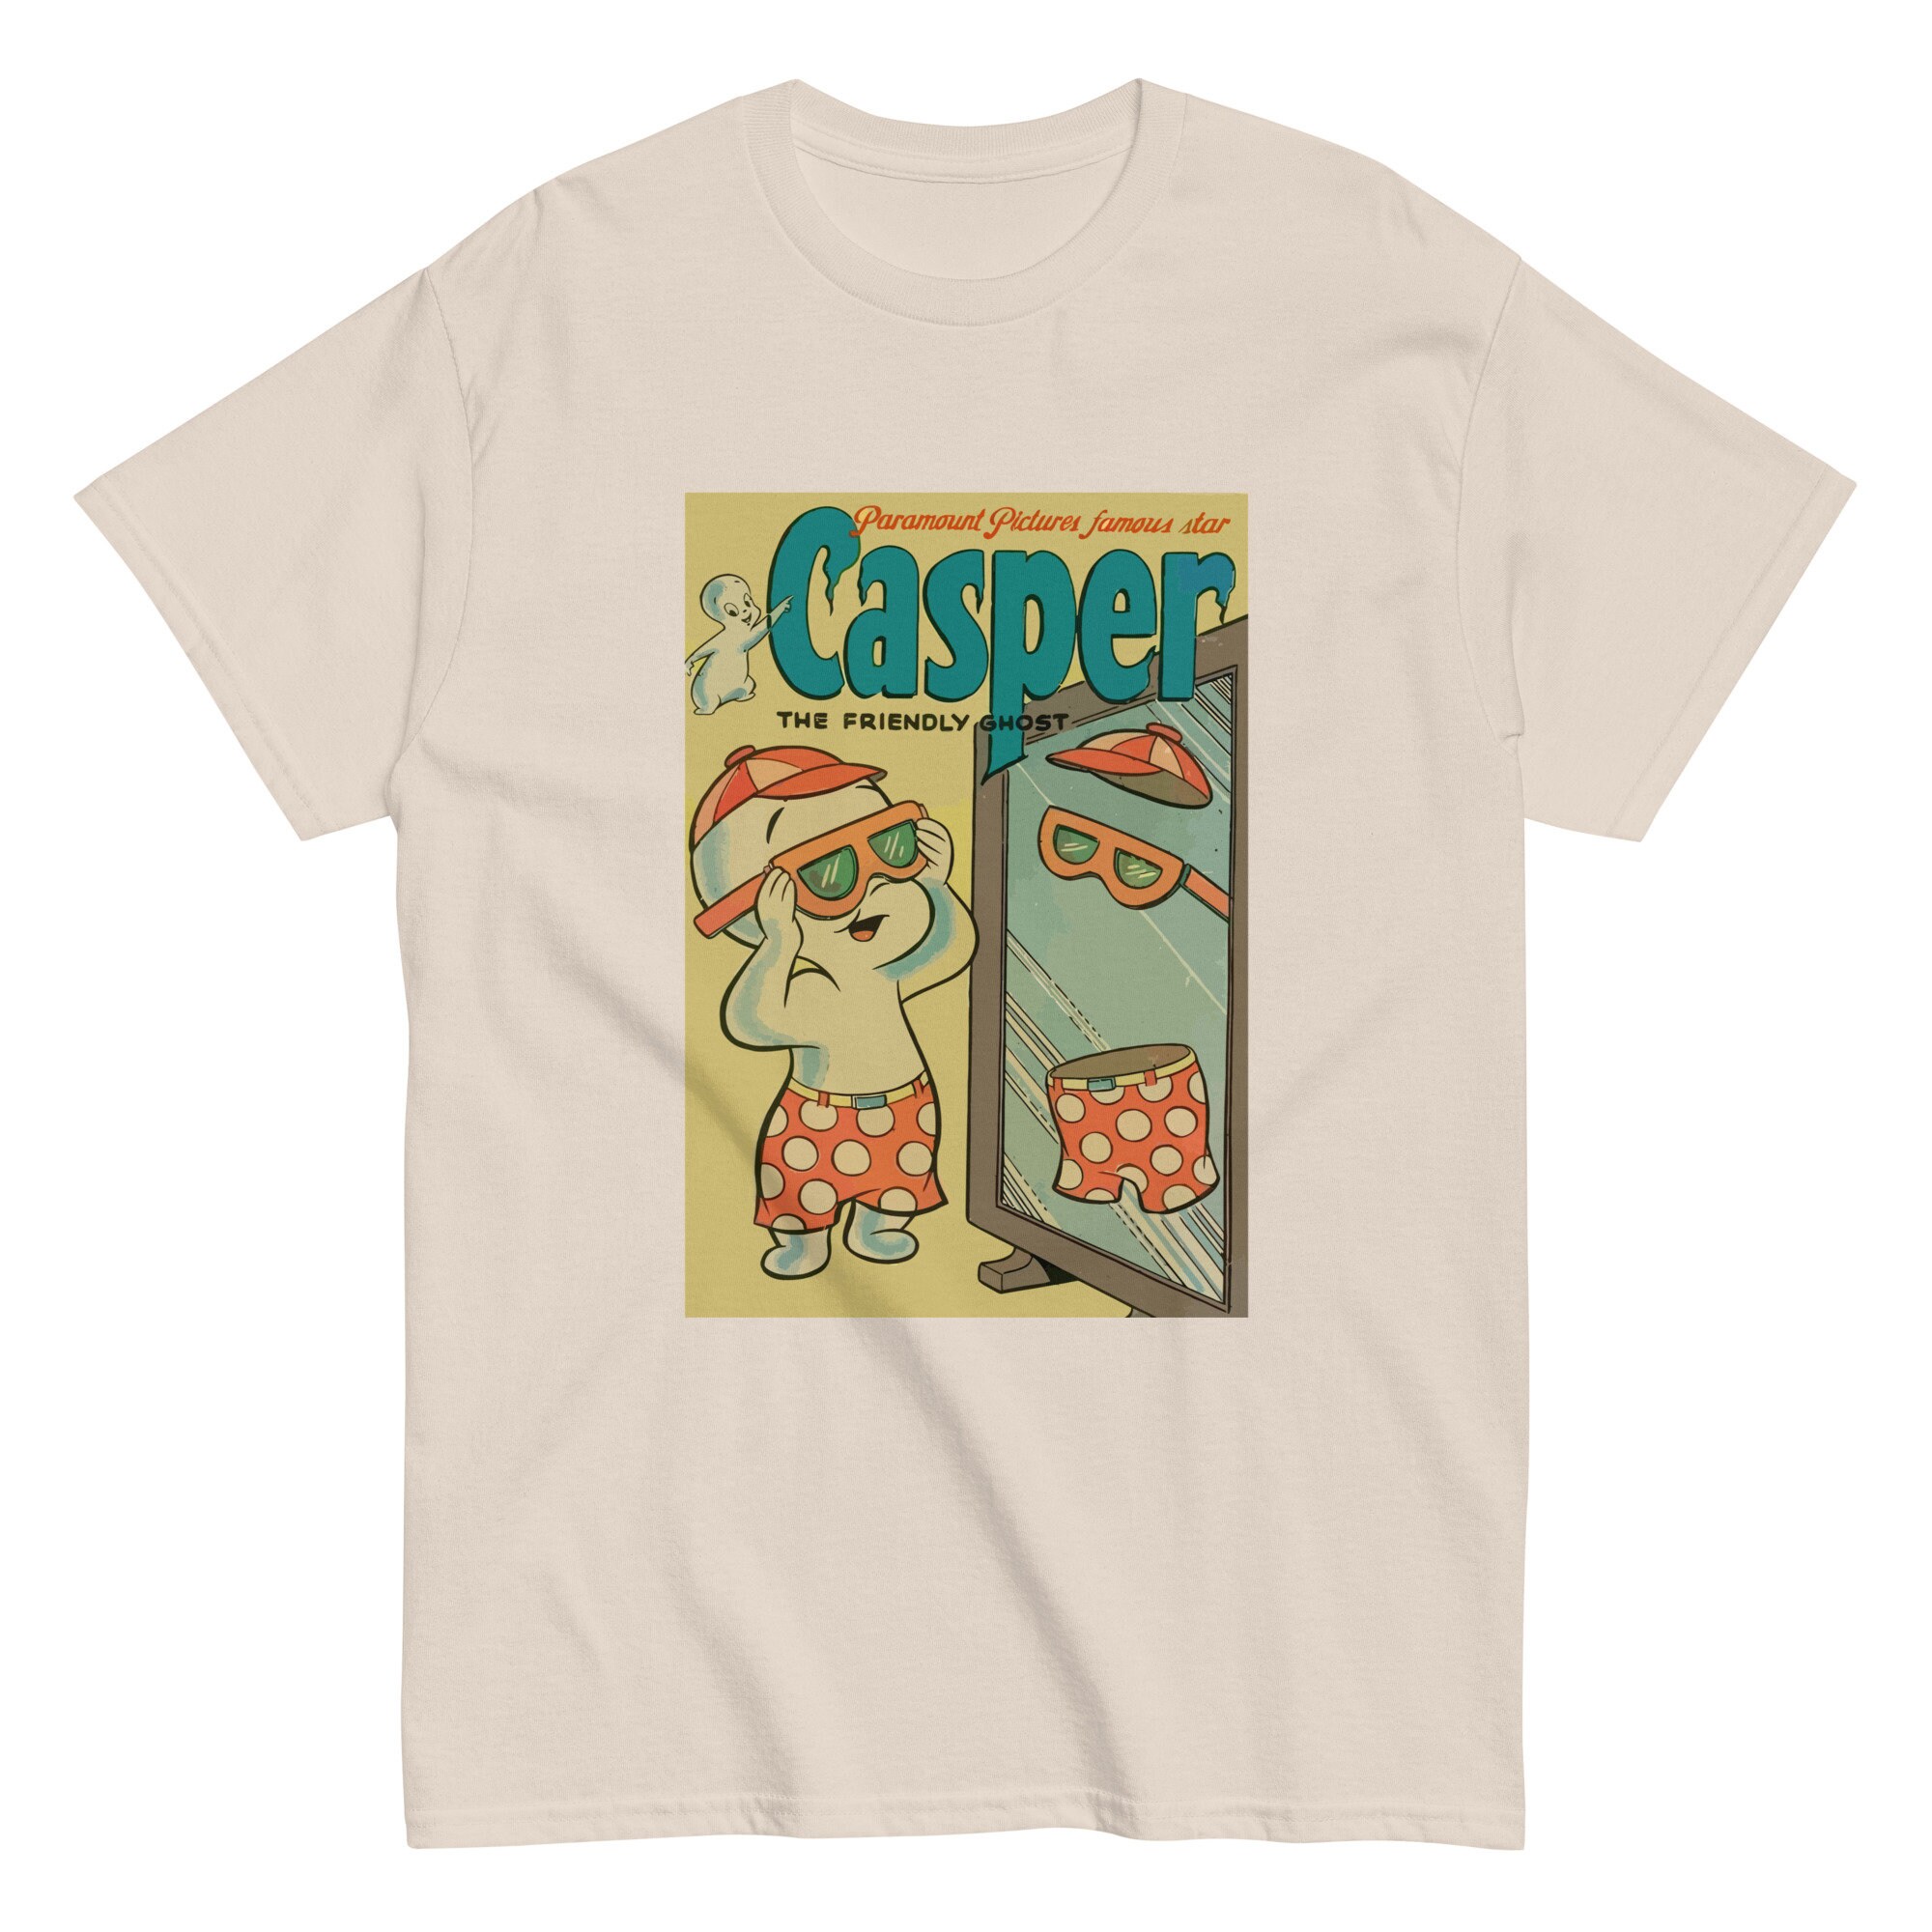 Ombord Badekar følelse Vintage Casper Shirt - Etsy Sweden